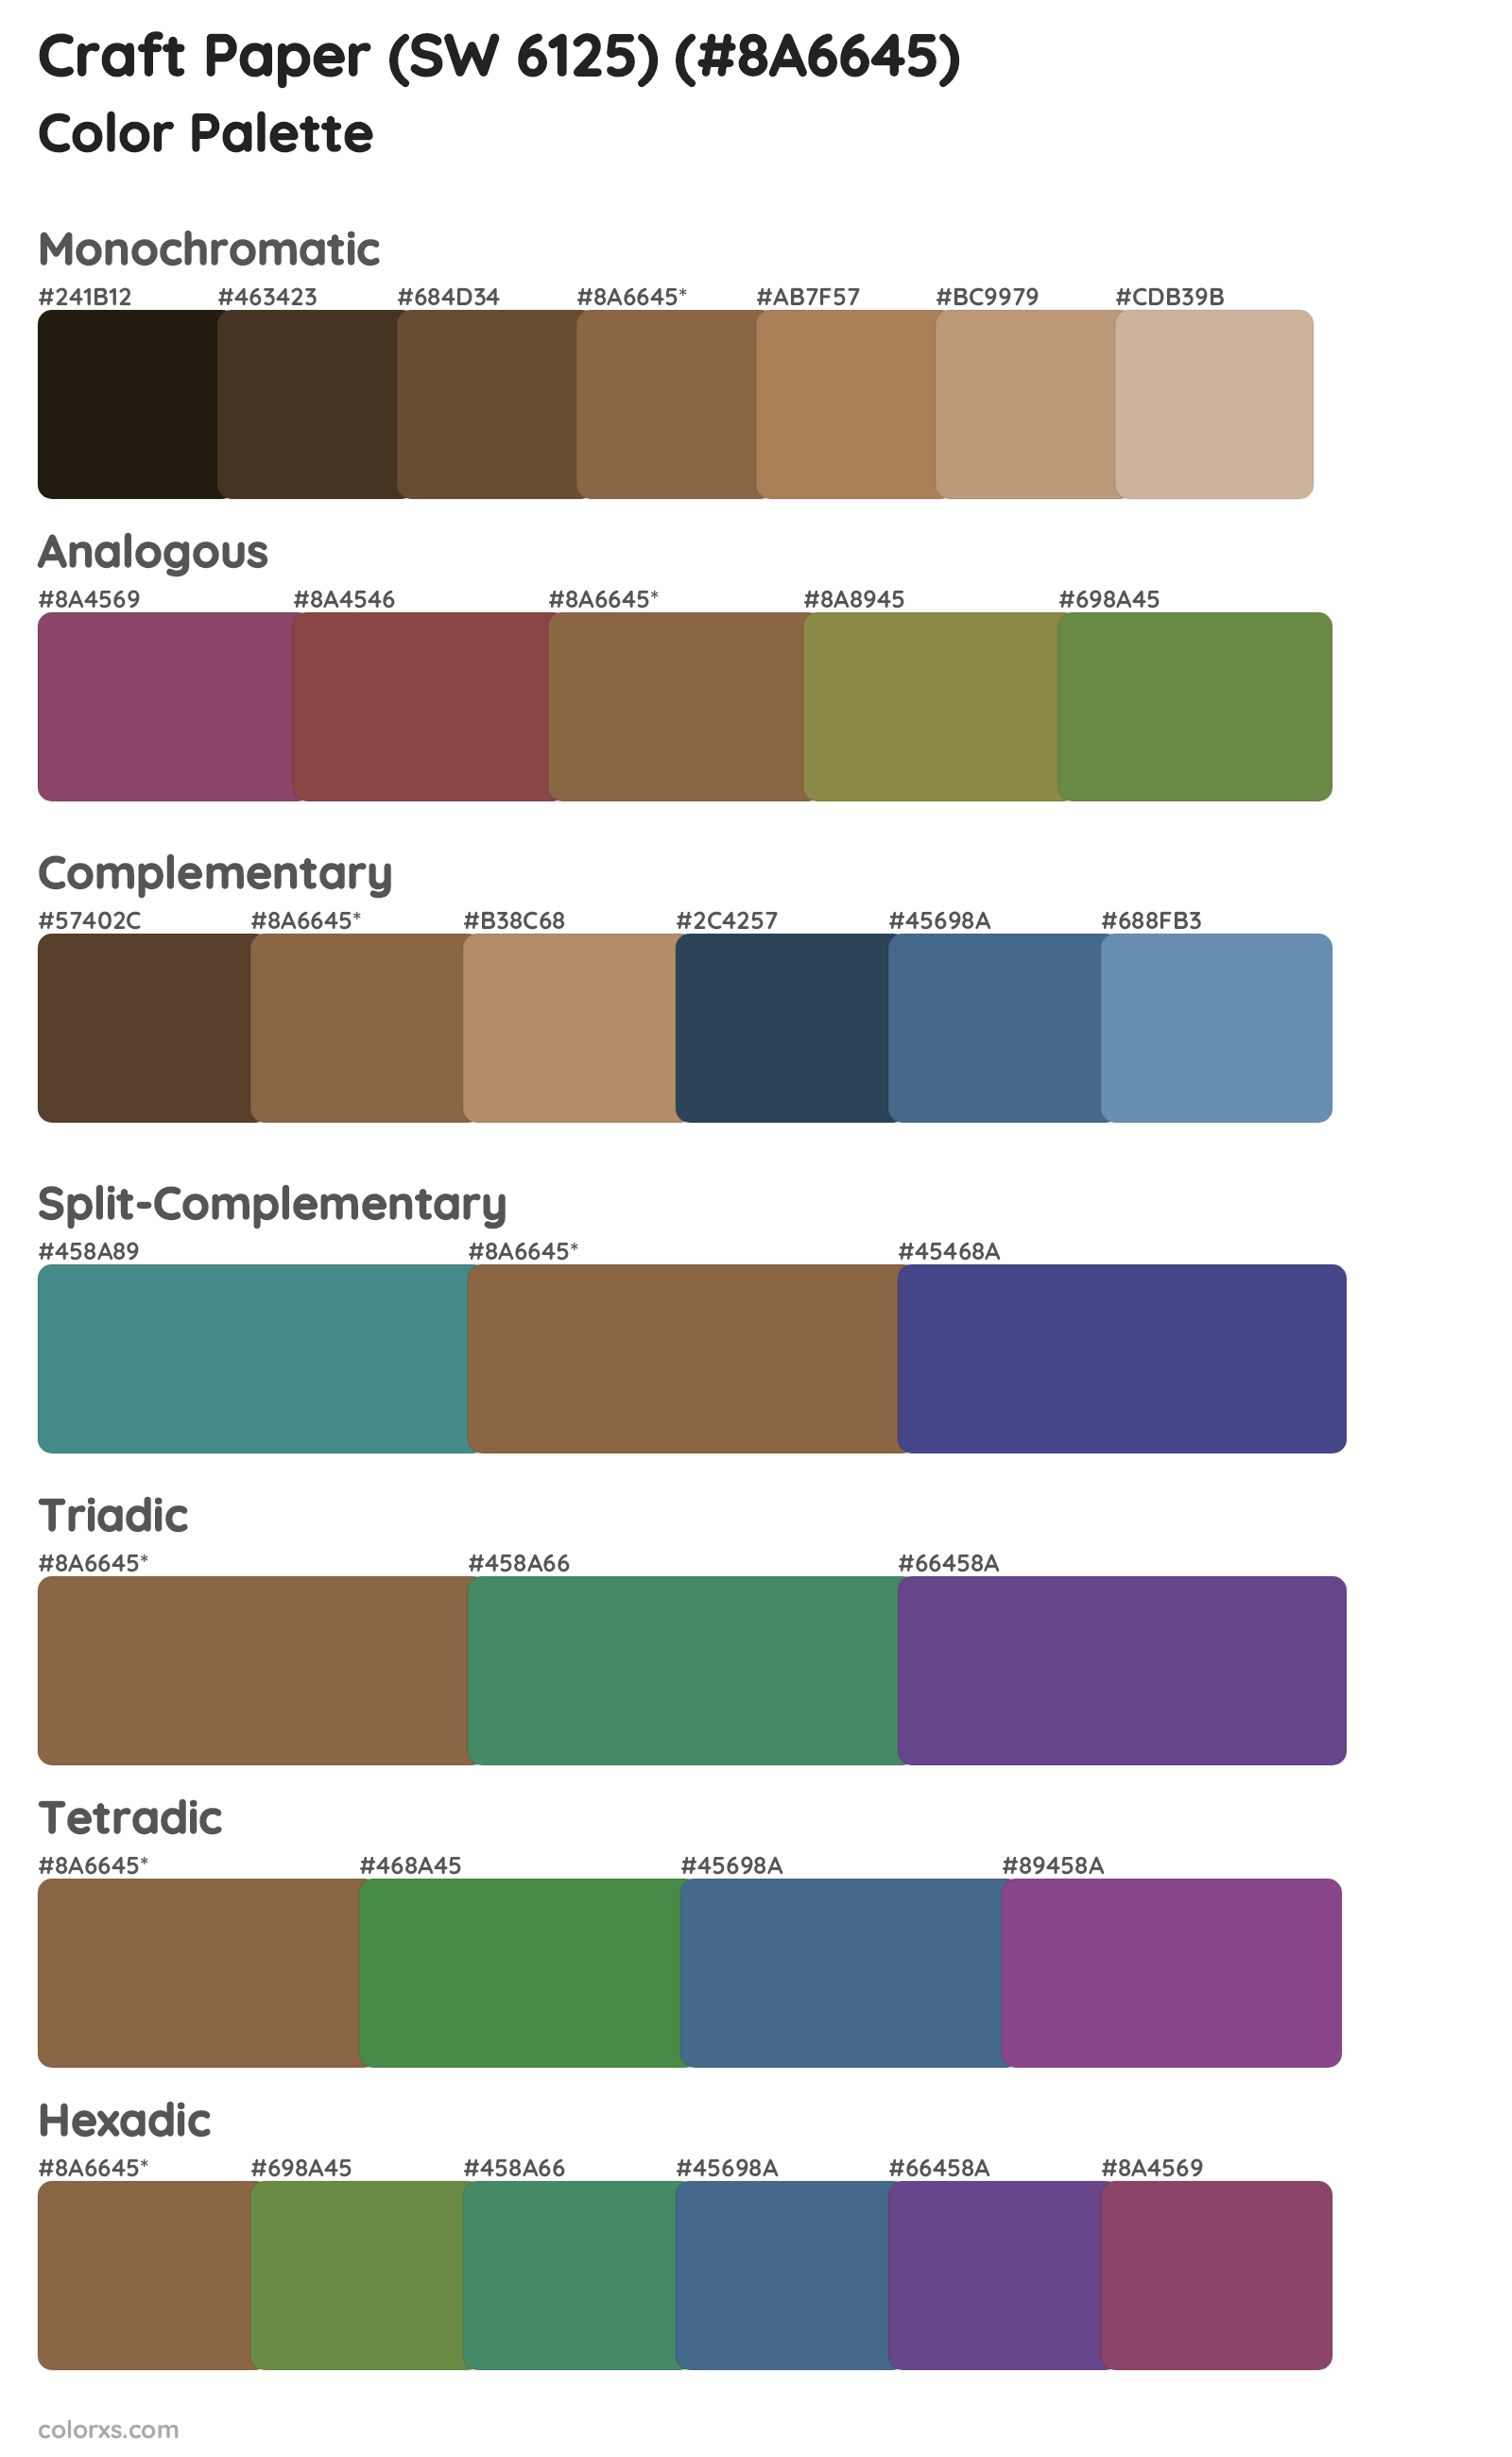 Craft Paper (SW 6125) Color Scheme Palettes